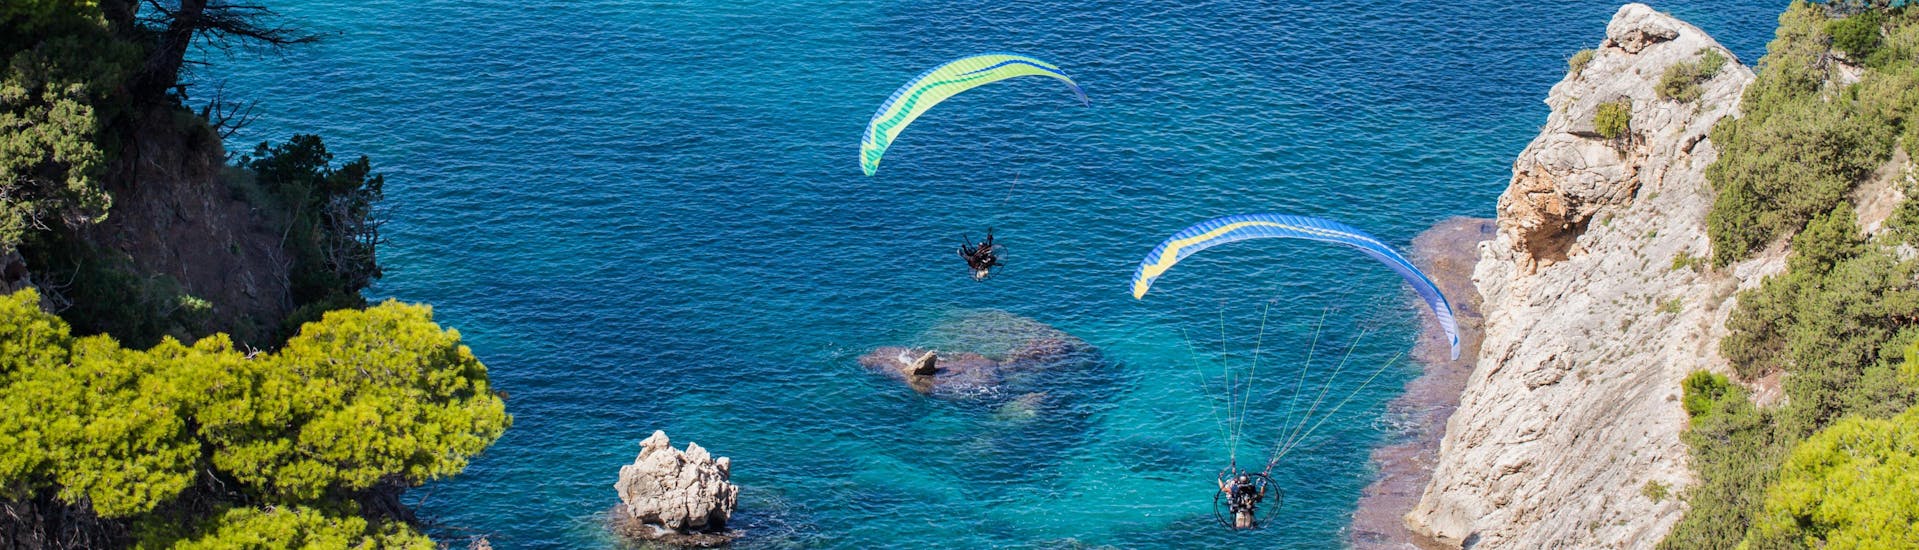 Regio Chania: Een tandemvlucht vindt plaats in een van de hotspots voor paragliding.